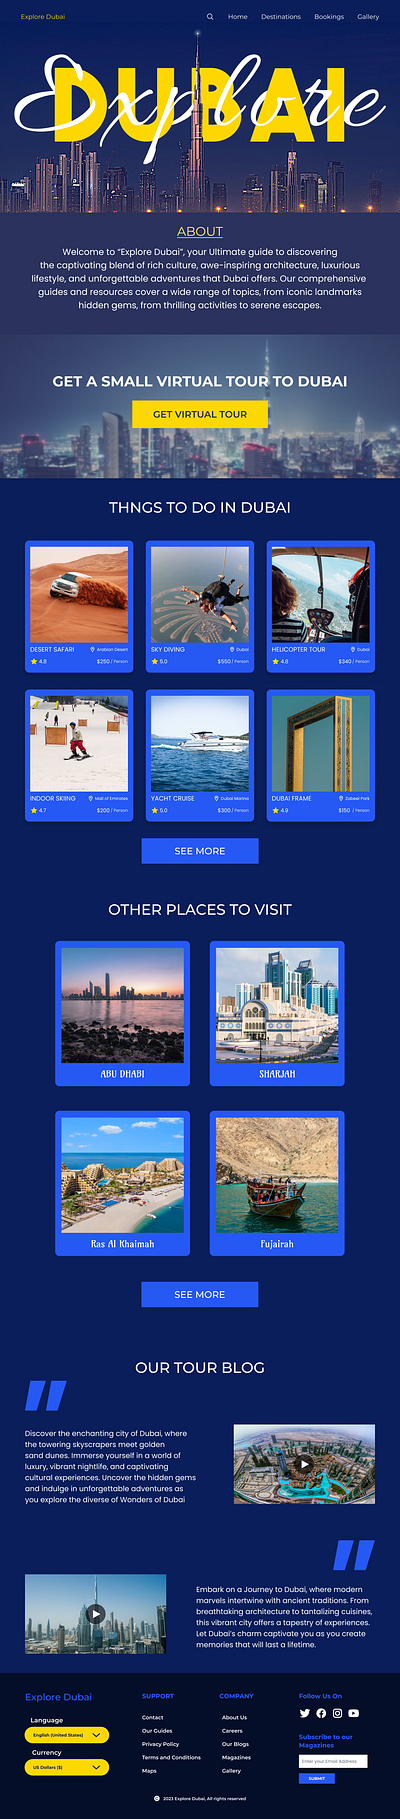 Explore Dubai - Tourism Website UI Design animation branding graphic design logo motion graphics ui